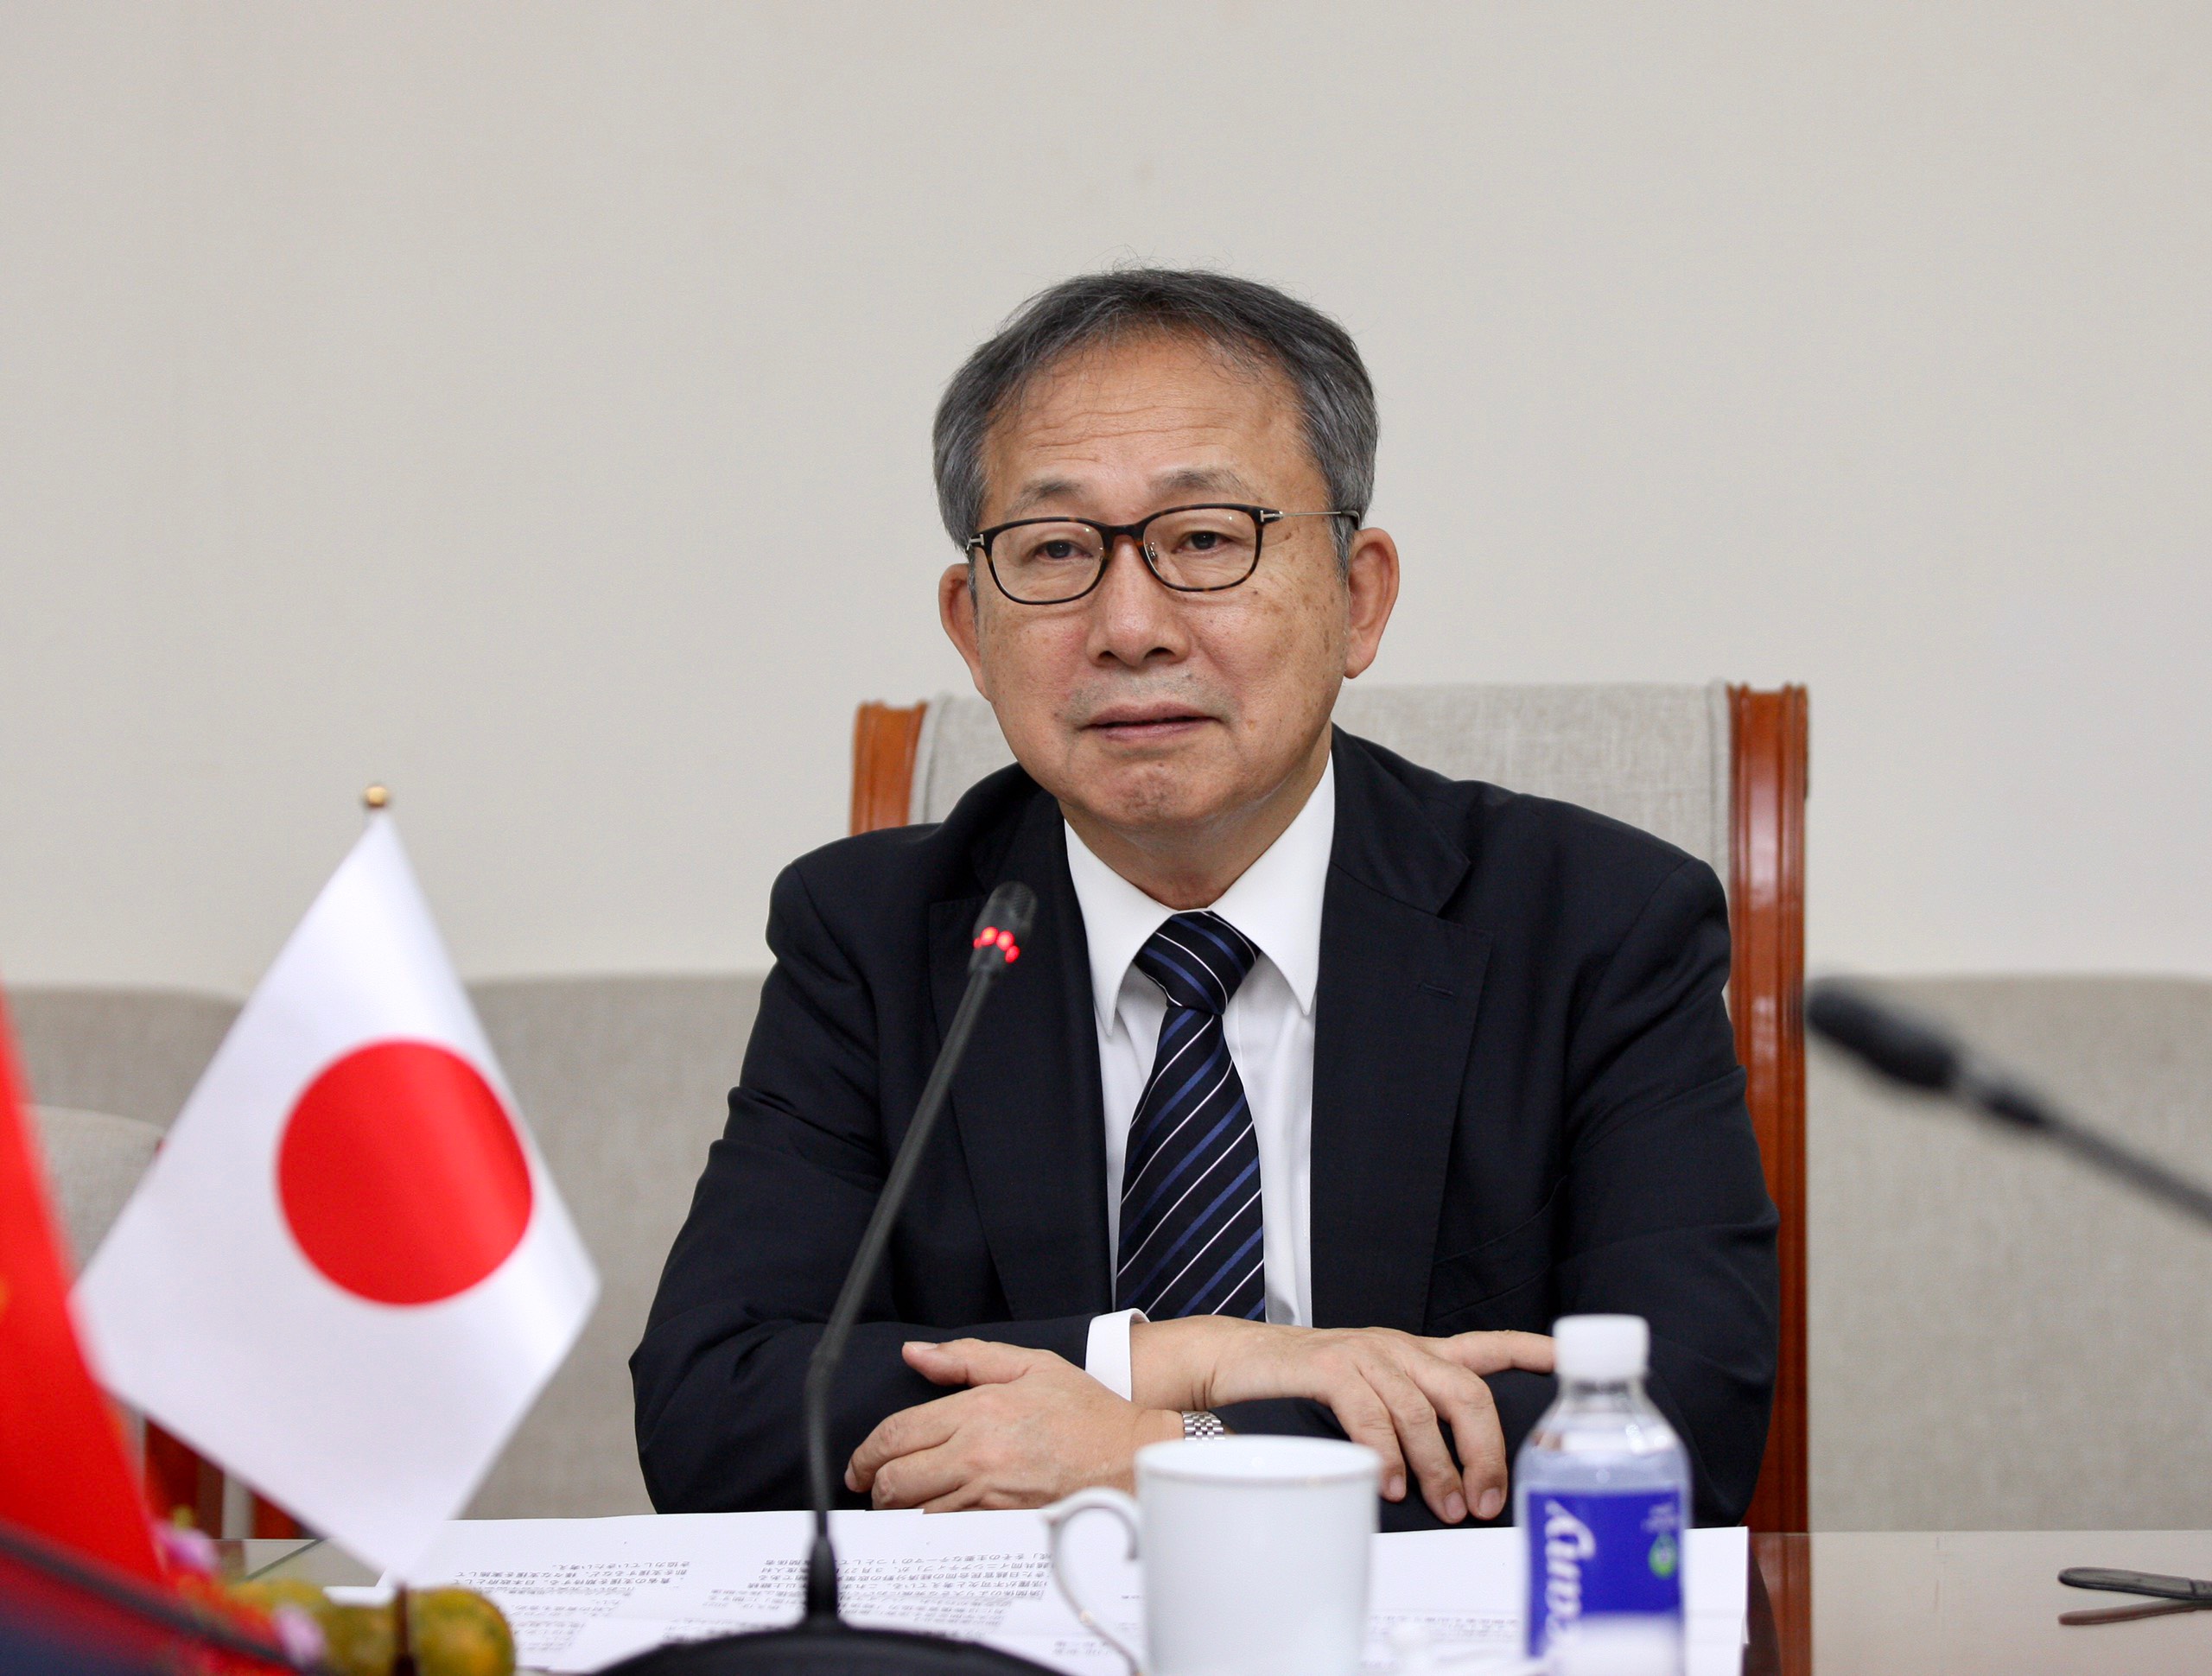 Ngài Yamada Takio, Đại sứ Đặc mệnh toàn quyền Nhật Bản tại Việt Nam phát biểu tại buổi tiếp.